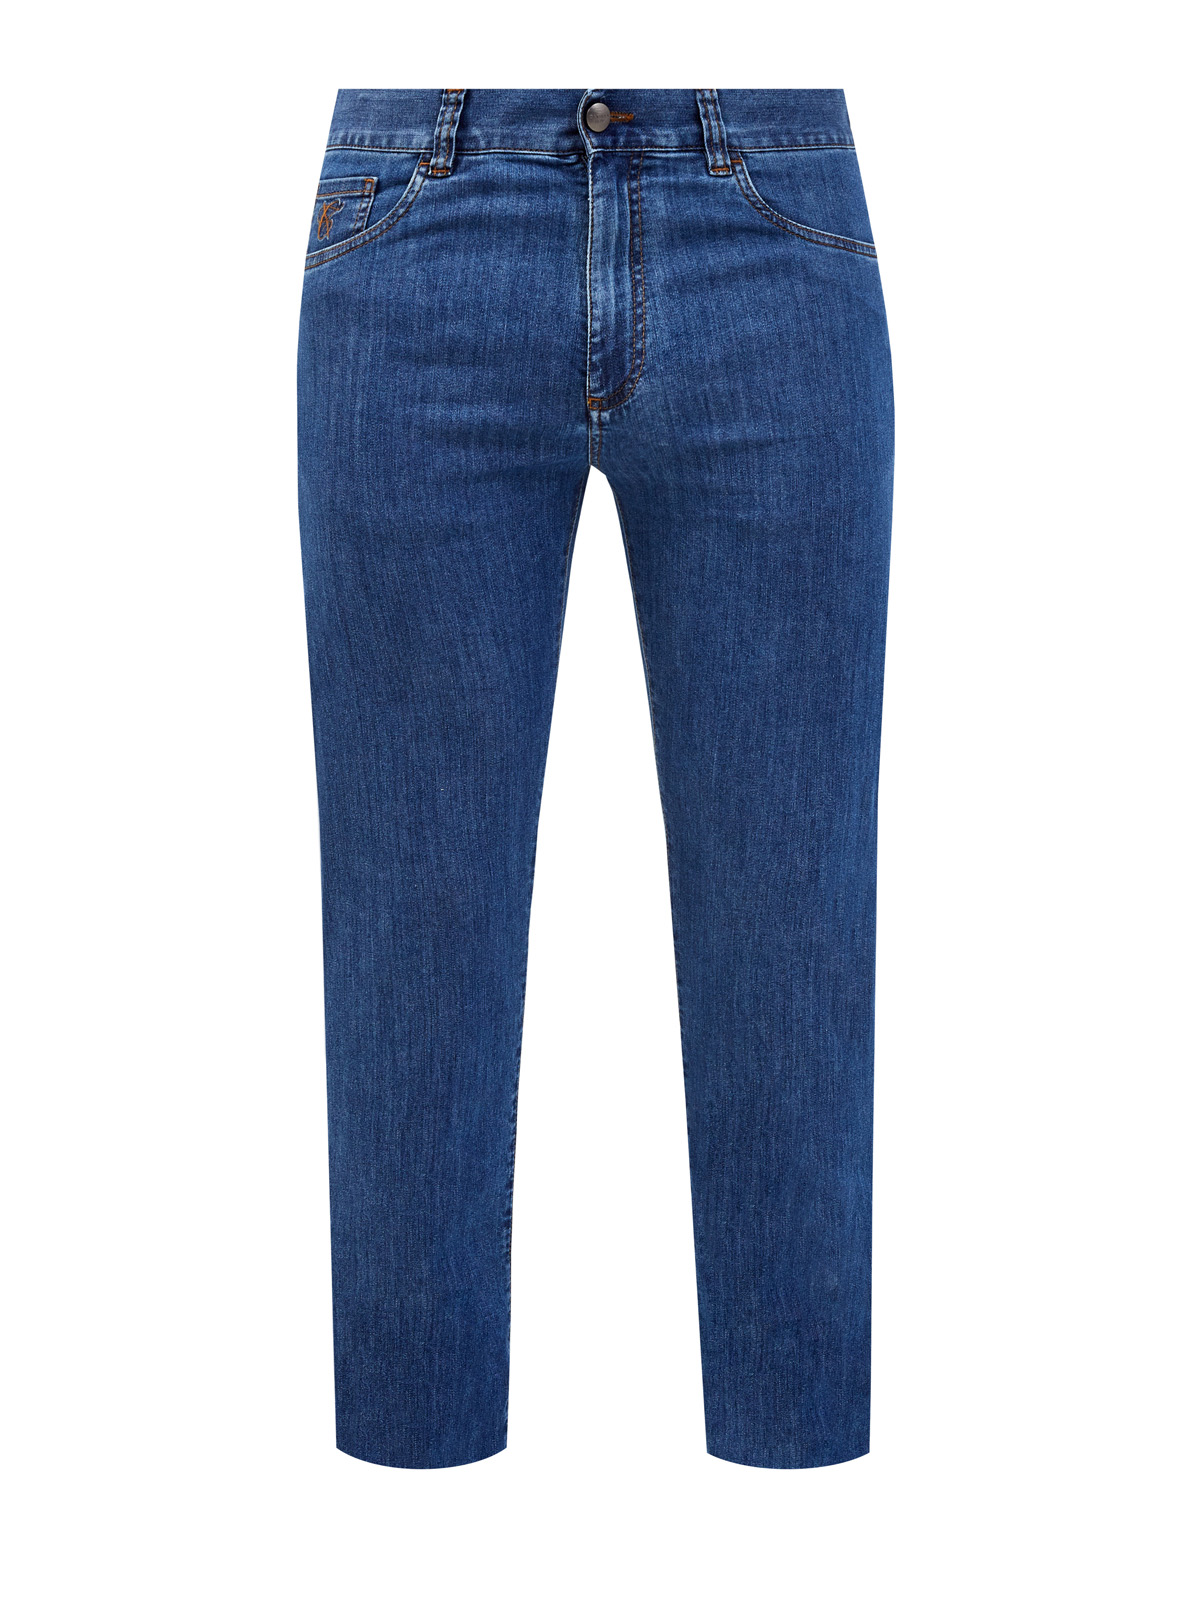 Классические джинсы прямого кроя с контрастной прострочкой